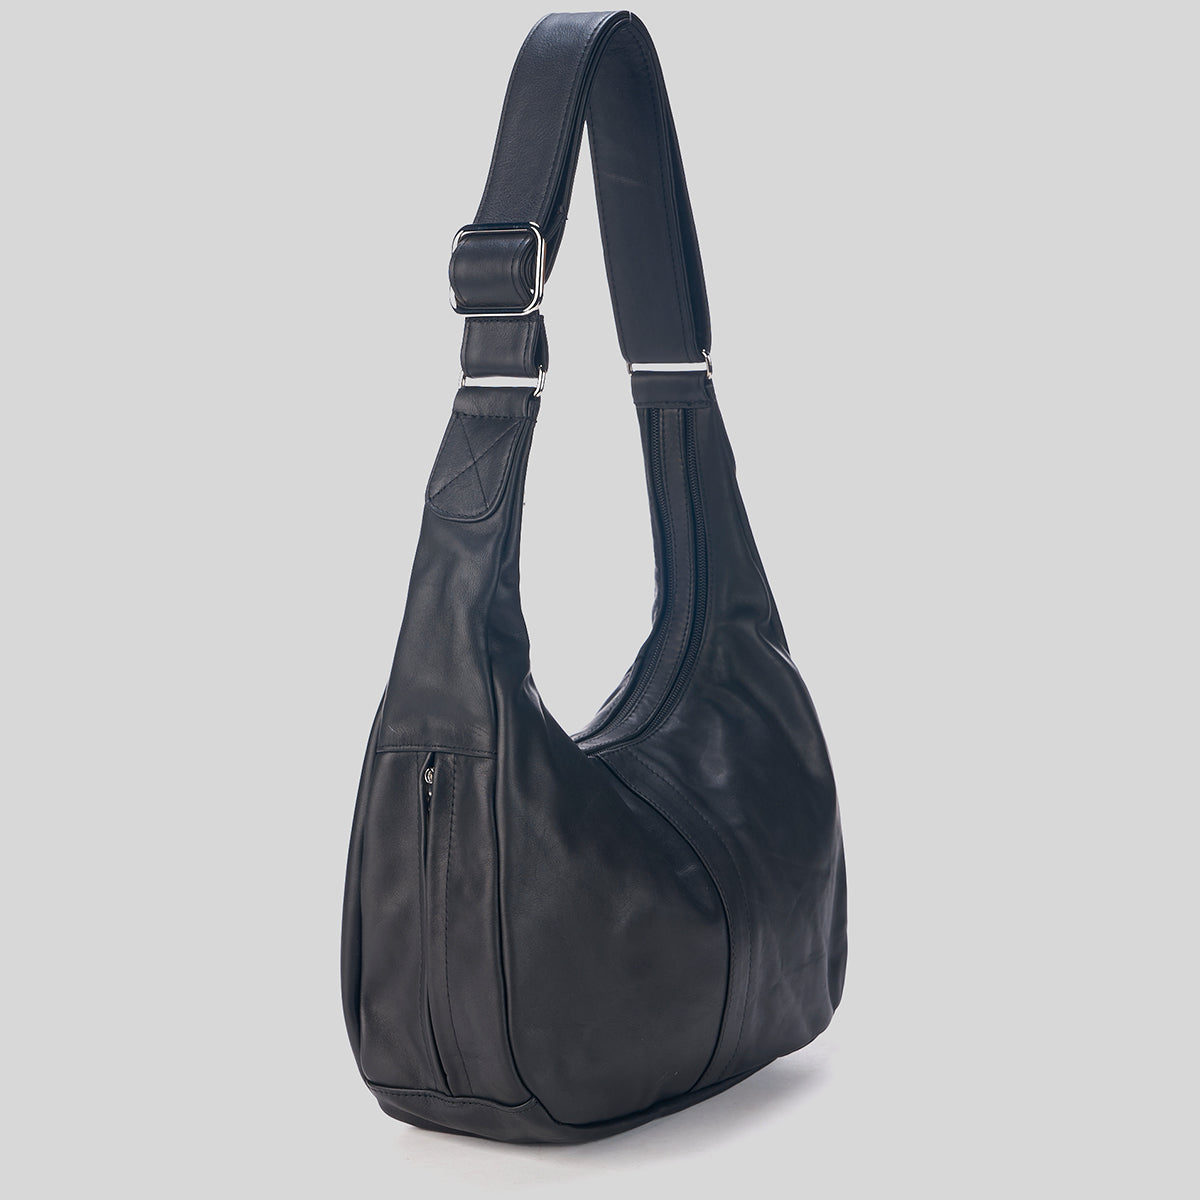 Click & Carry [Black] Bag Handle